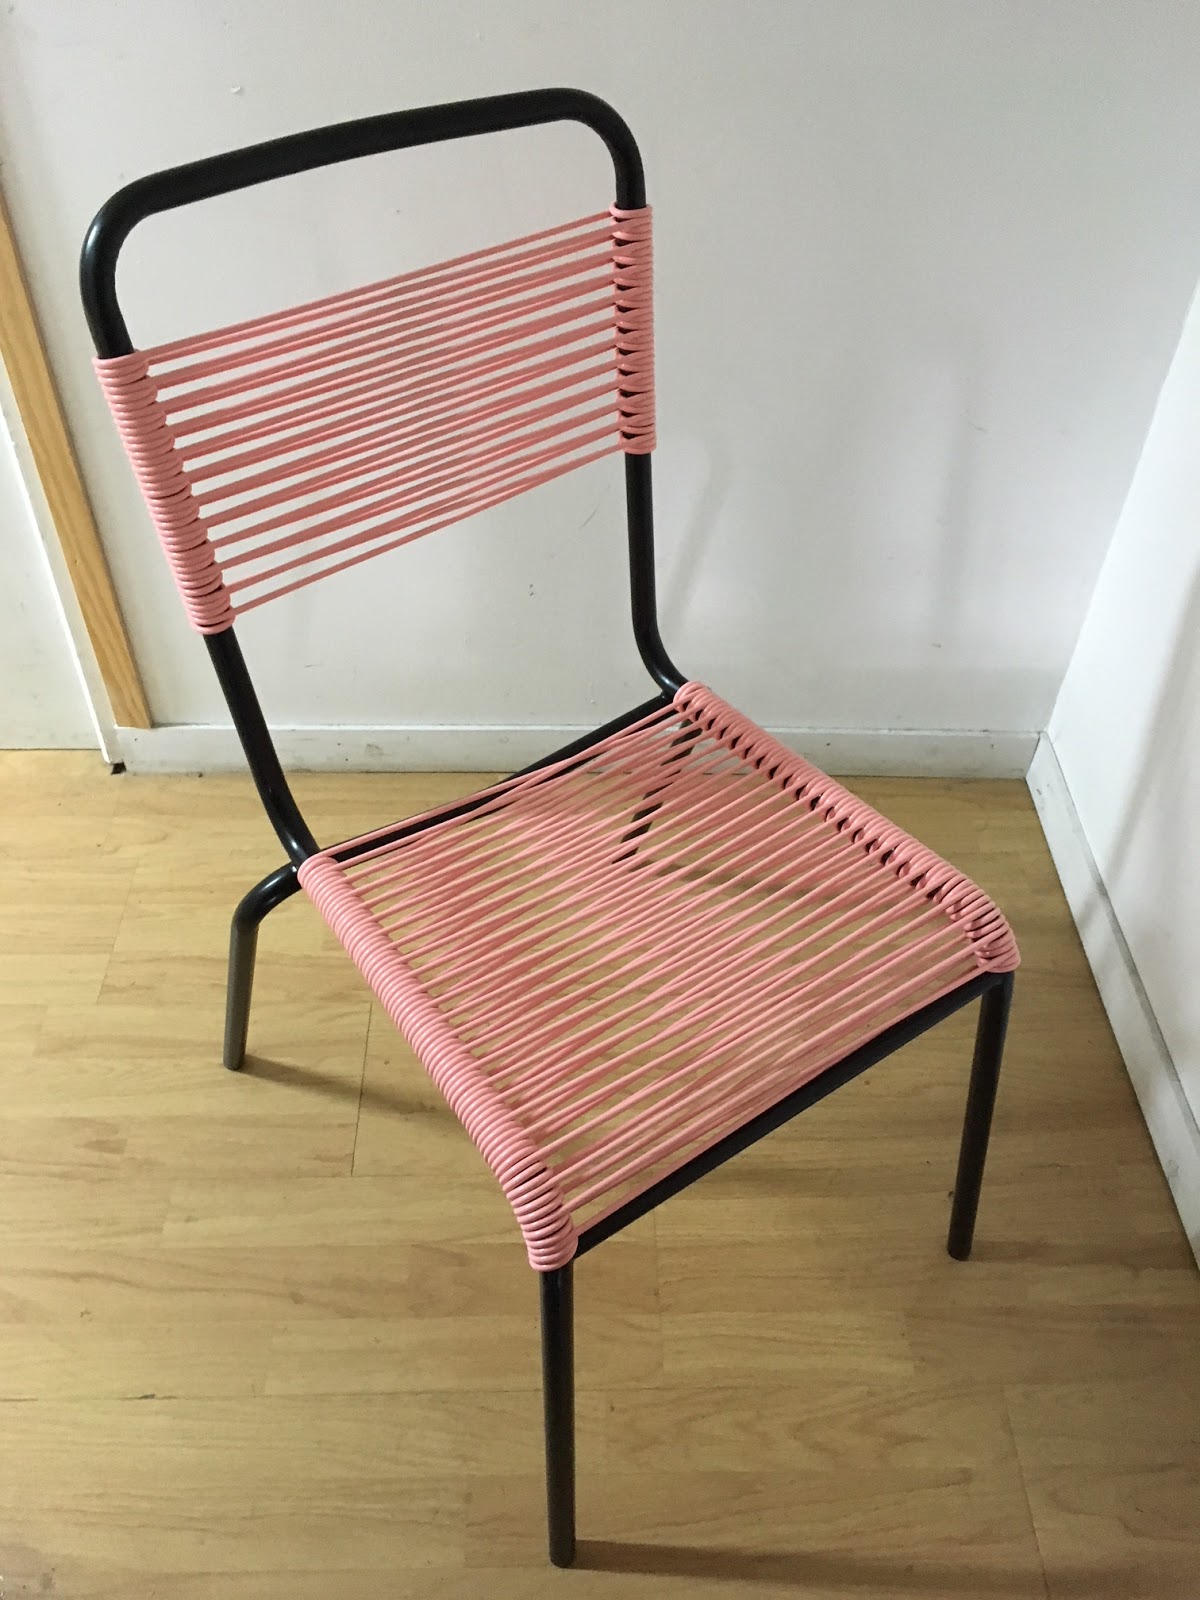 Fabriquer des objets en scoubidou (fauteuil, chaise